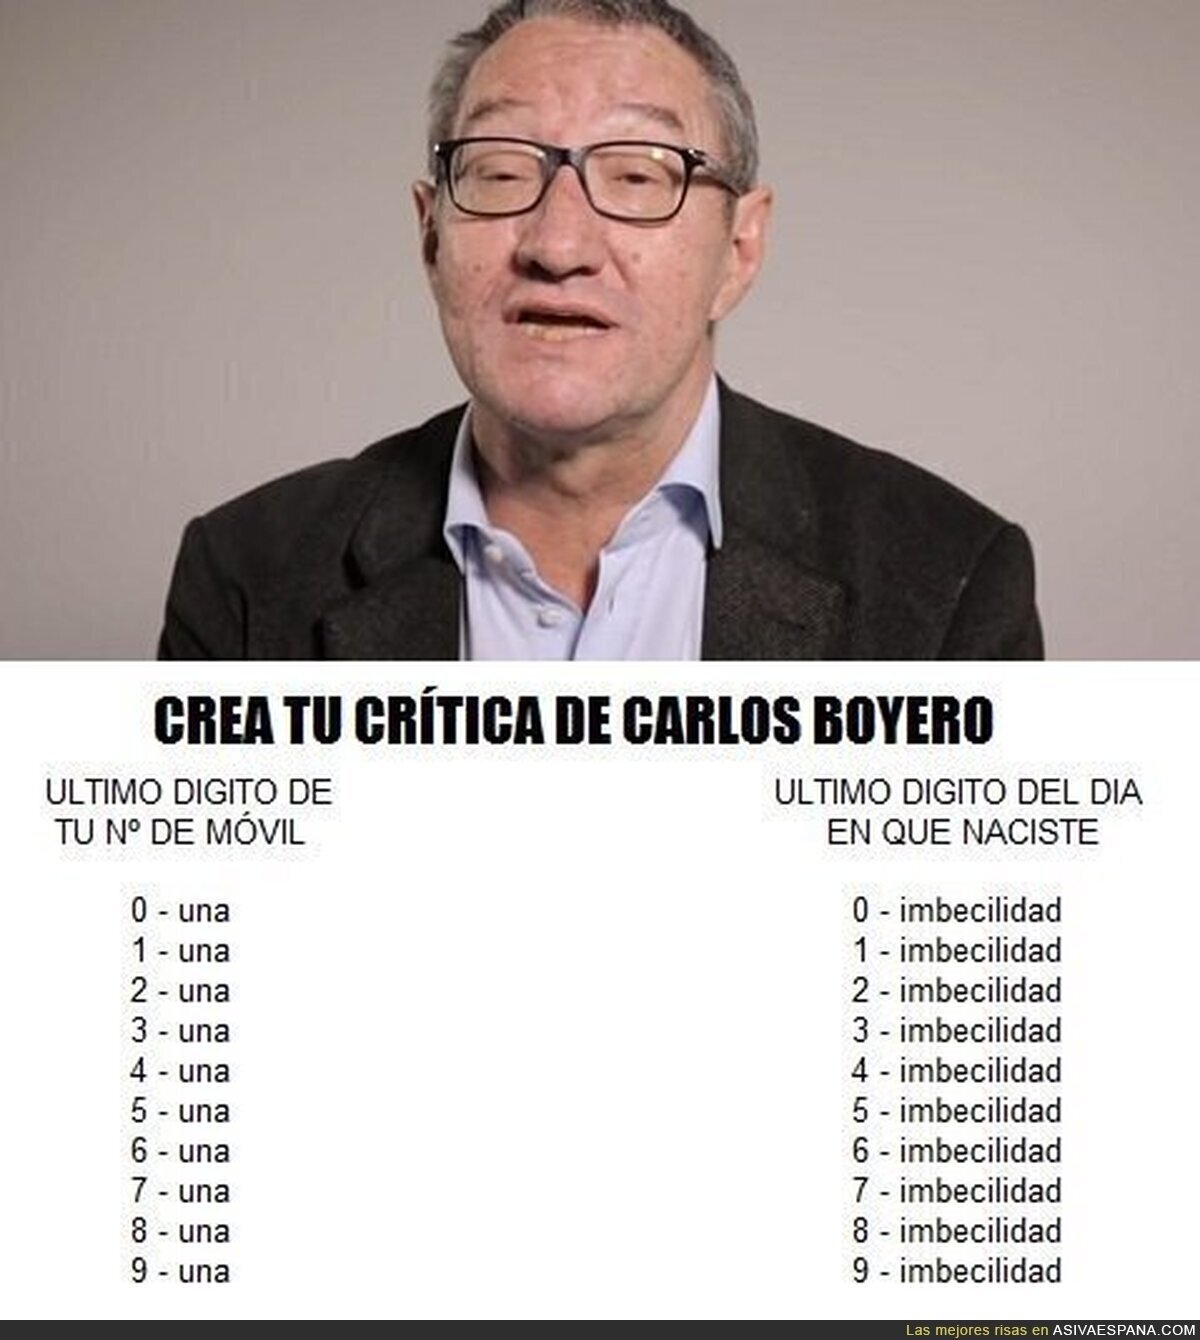 Carlos Boyero y las críticas